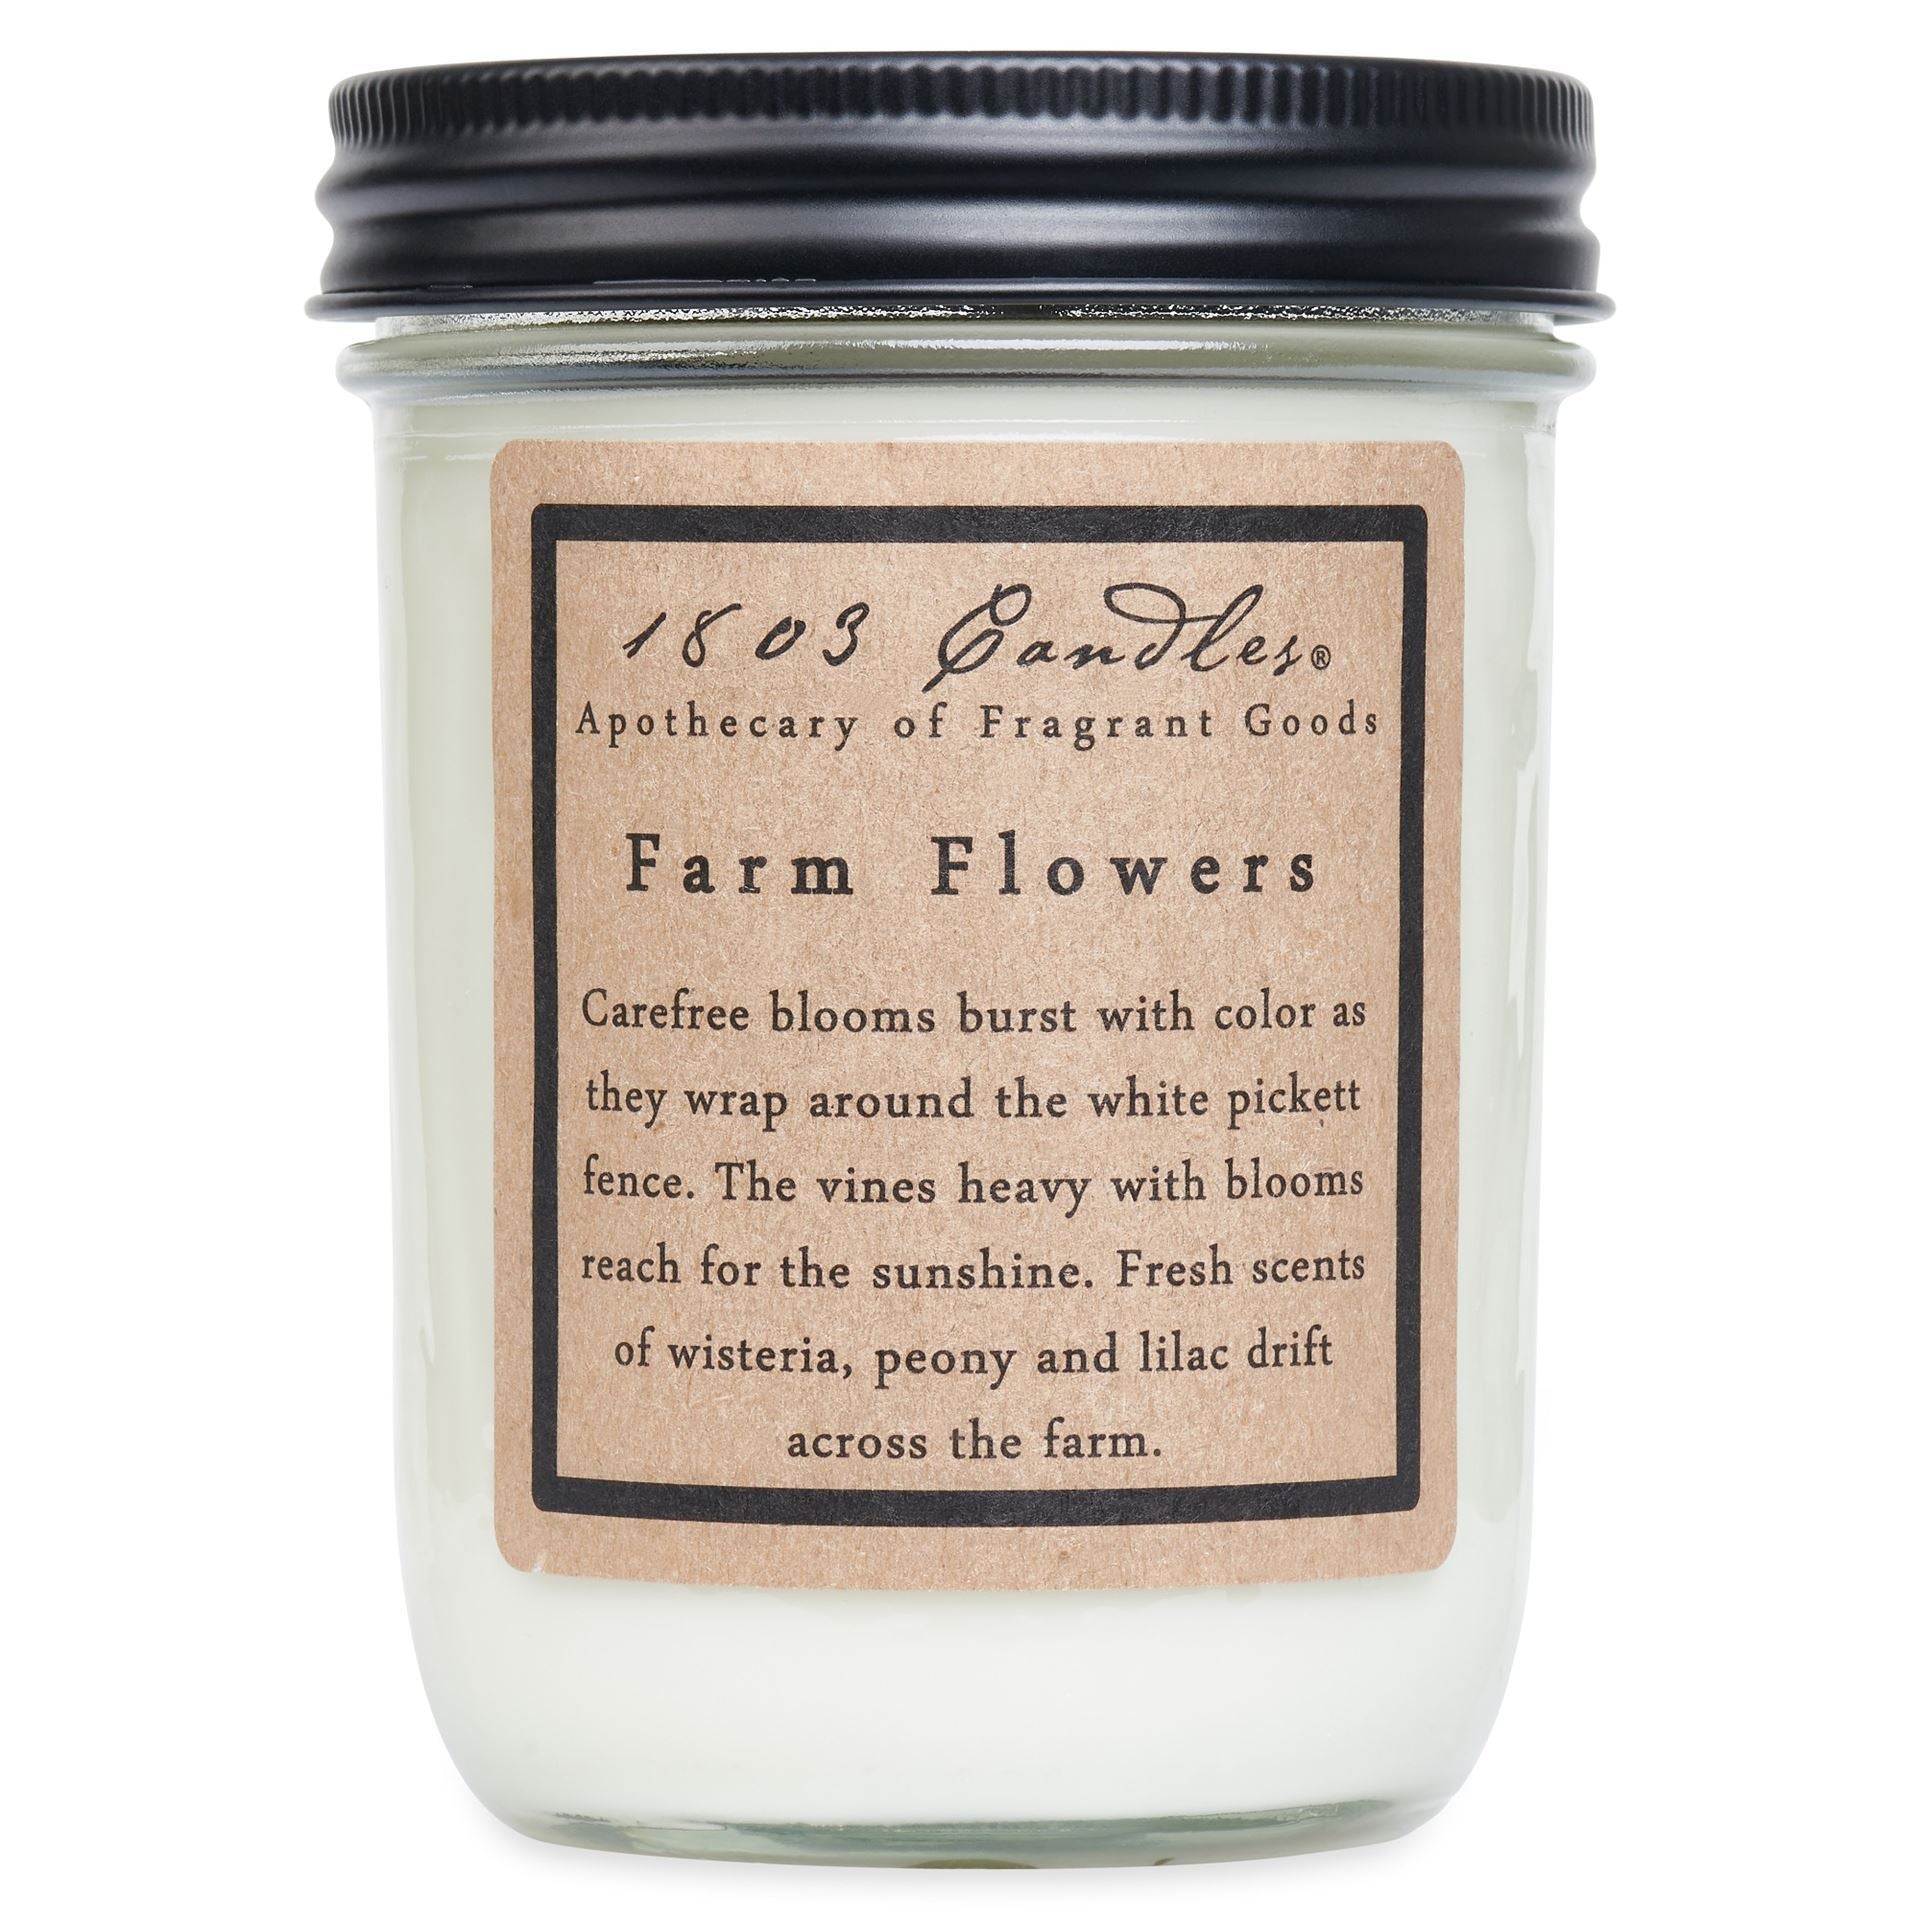 1803 Candles- 14oz jar - Farm Flowers